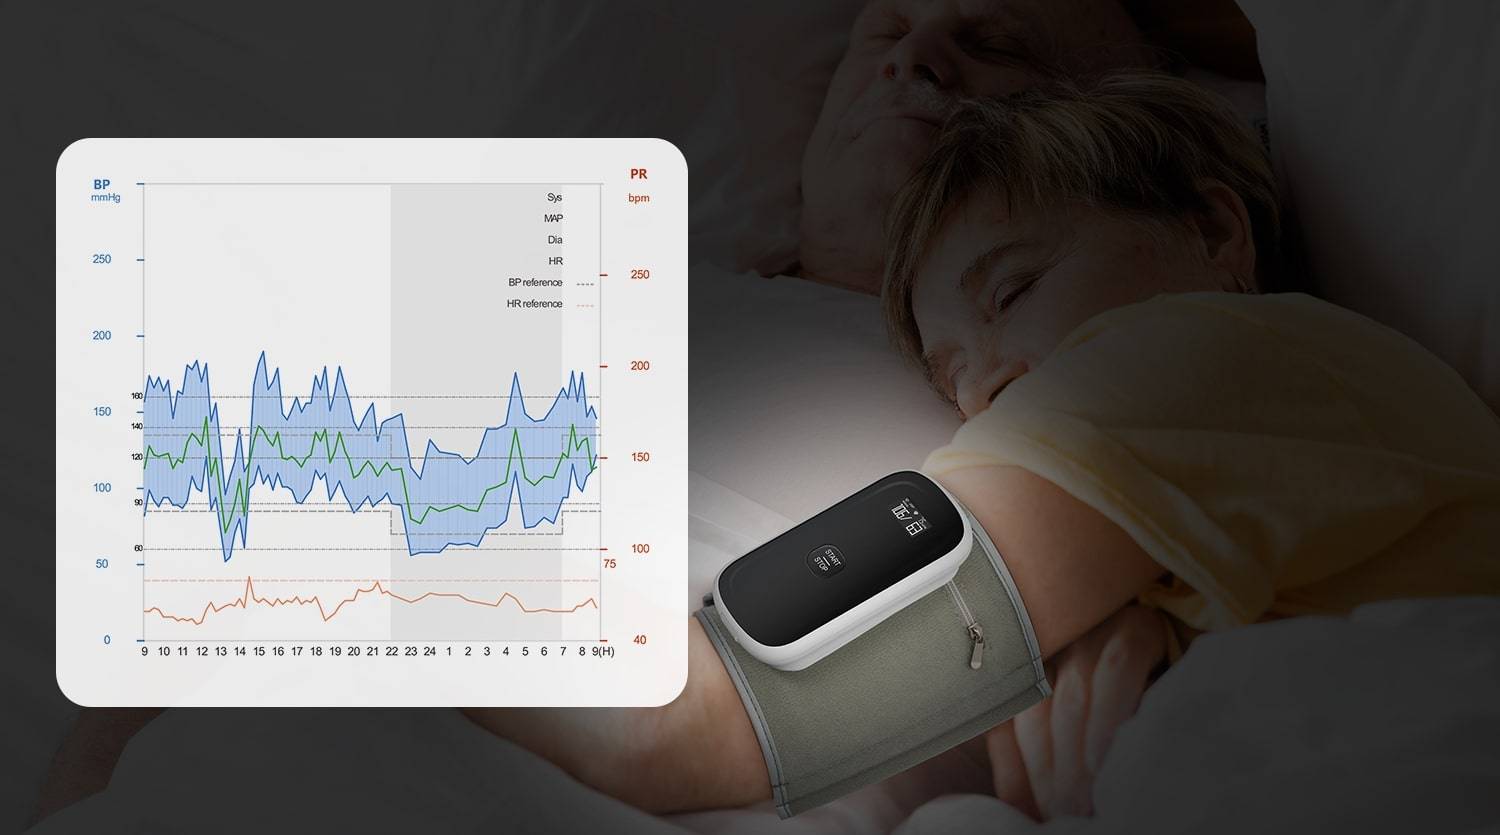 MAPA rastrea la presión arterial las 24 horas del día, los 7 días de la semana e indica la fluctuación de la presión arterial durante todo el día.